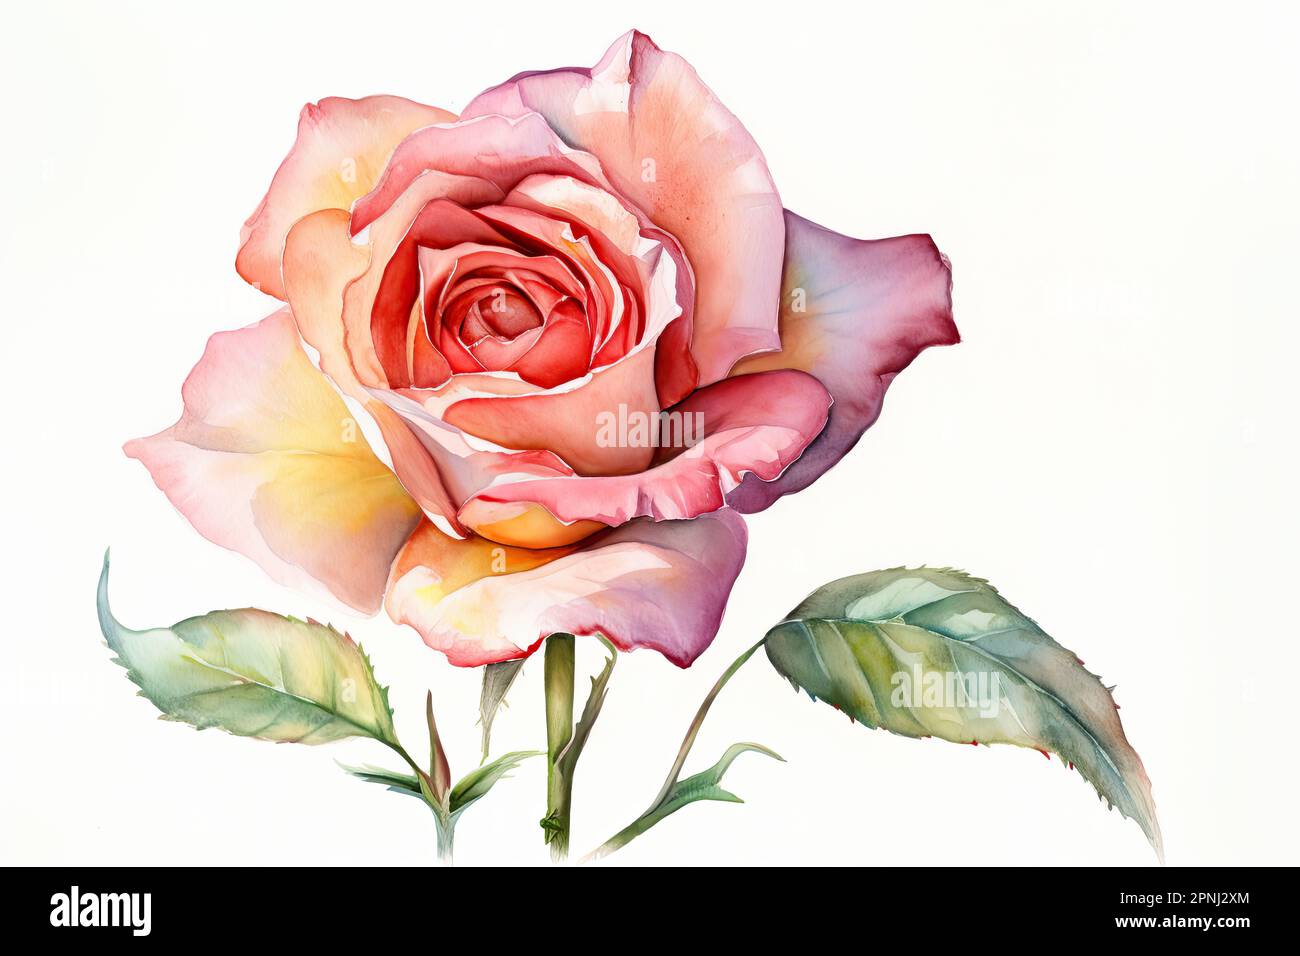 Malen Sie mit präzisen Pinselstrichen ein Aquarellbild einer einzelnen Rose mit einem realistischen und detaillierten Stil Stockfoto